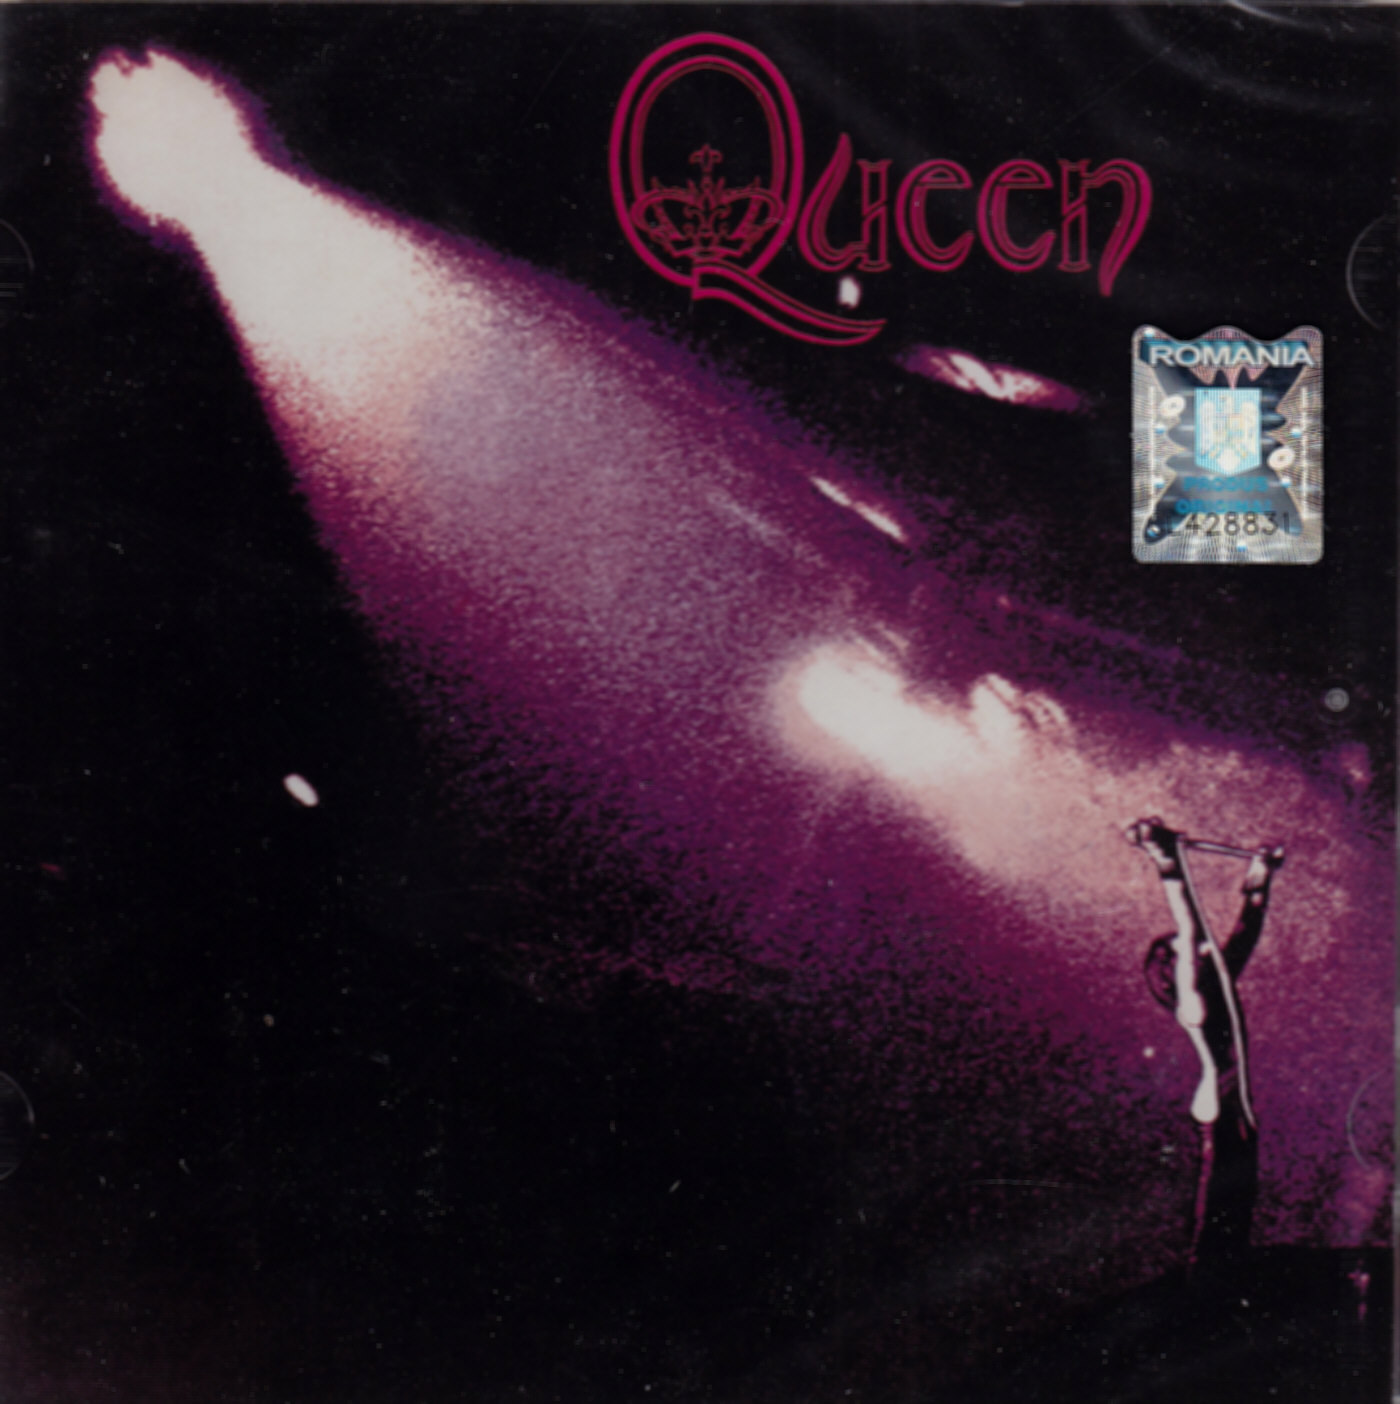 CD Queen - Queen - 2011 Digital remaster